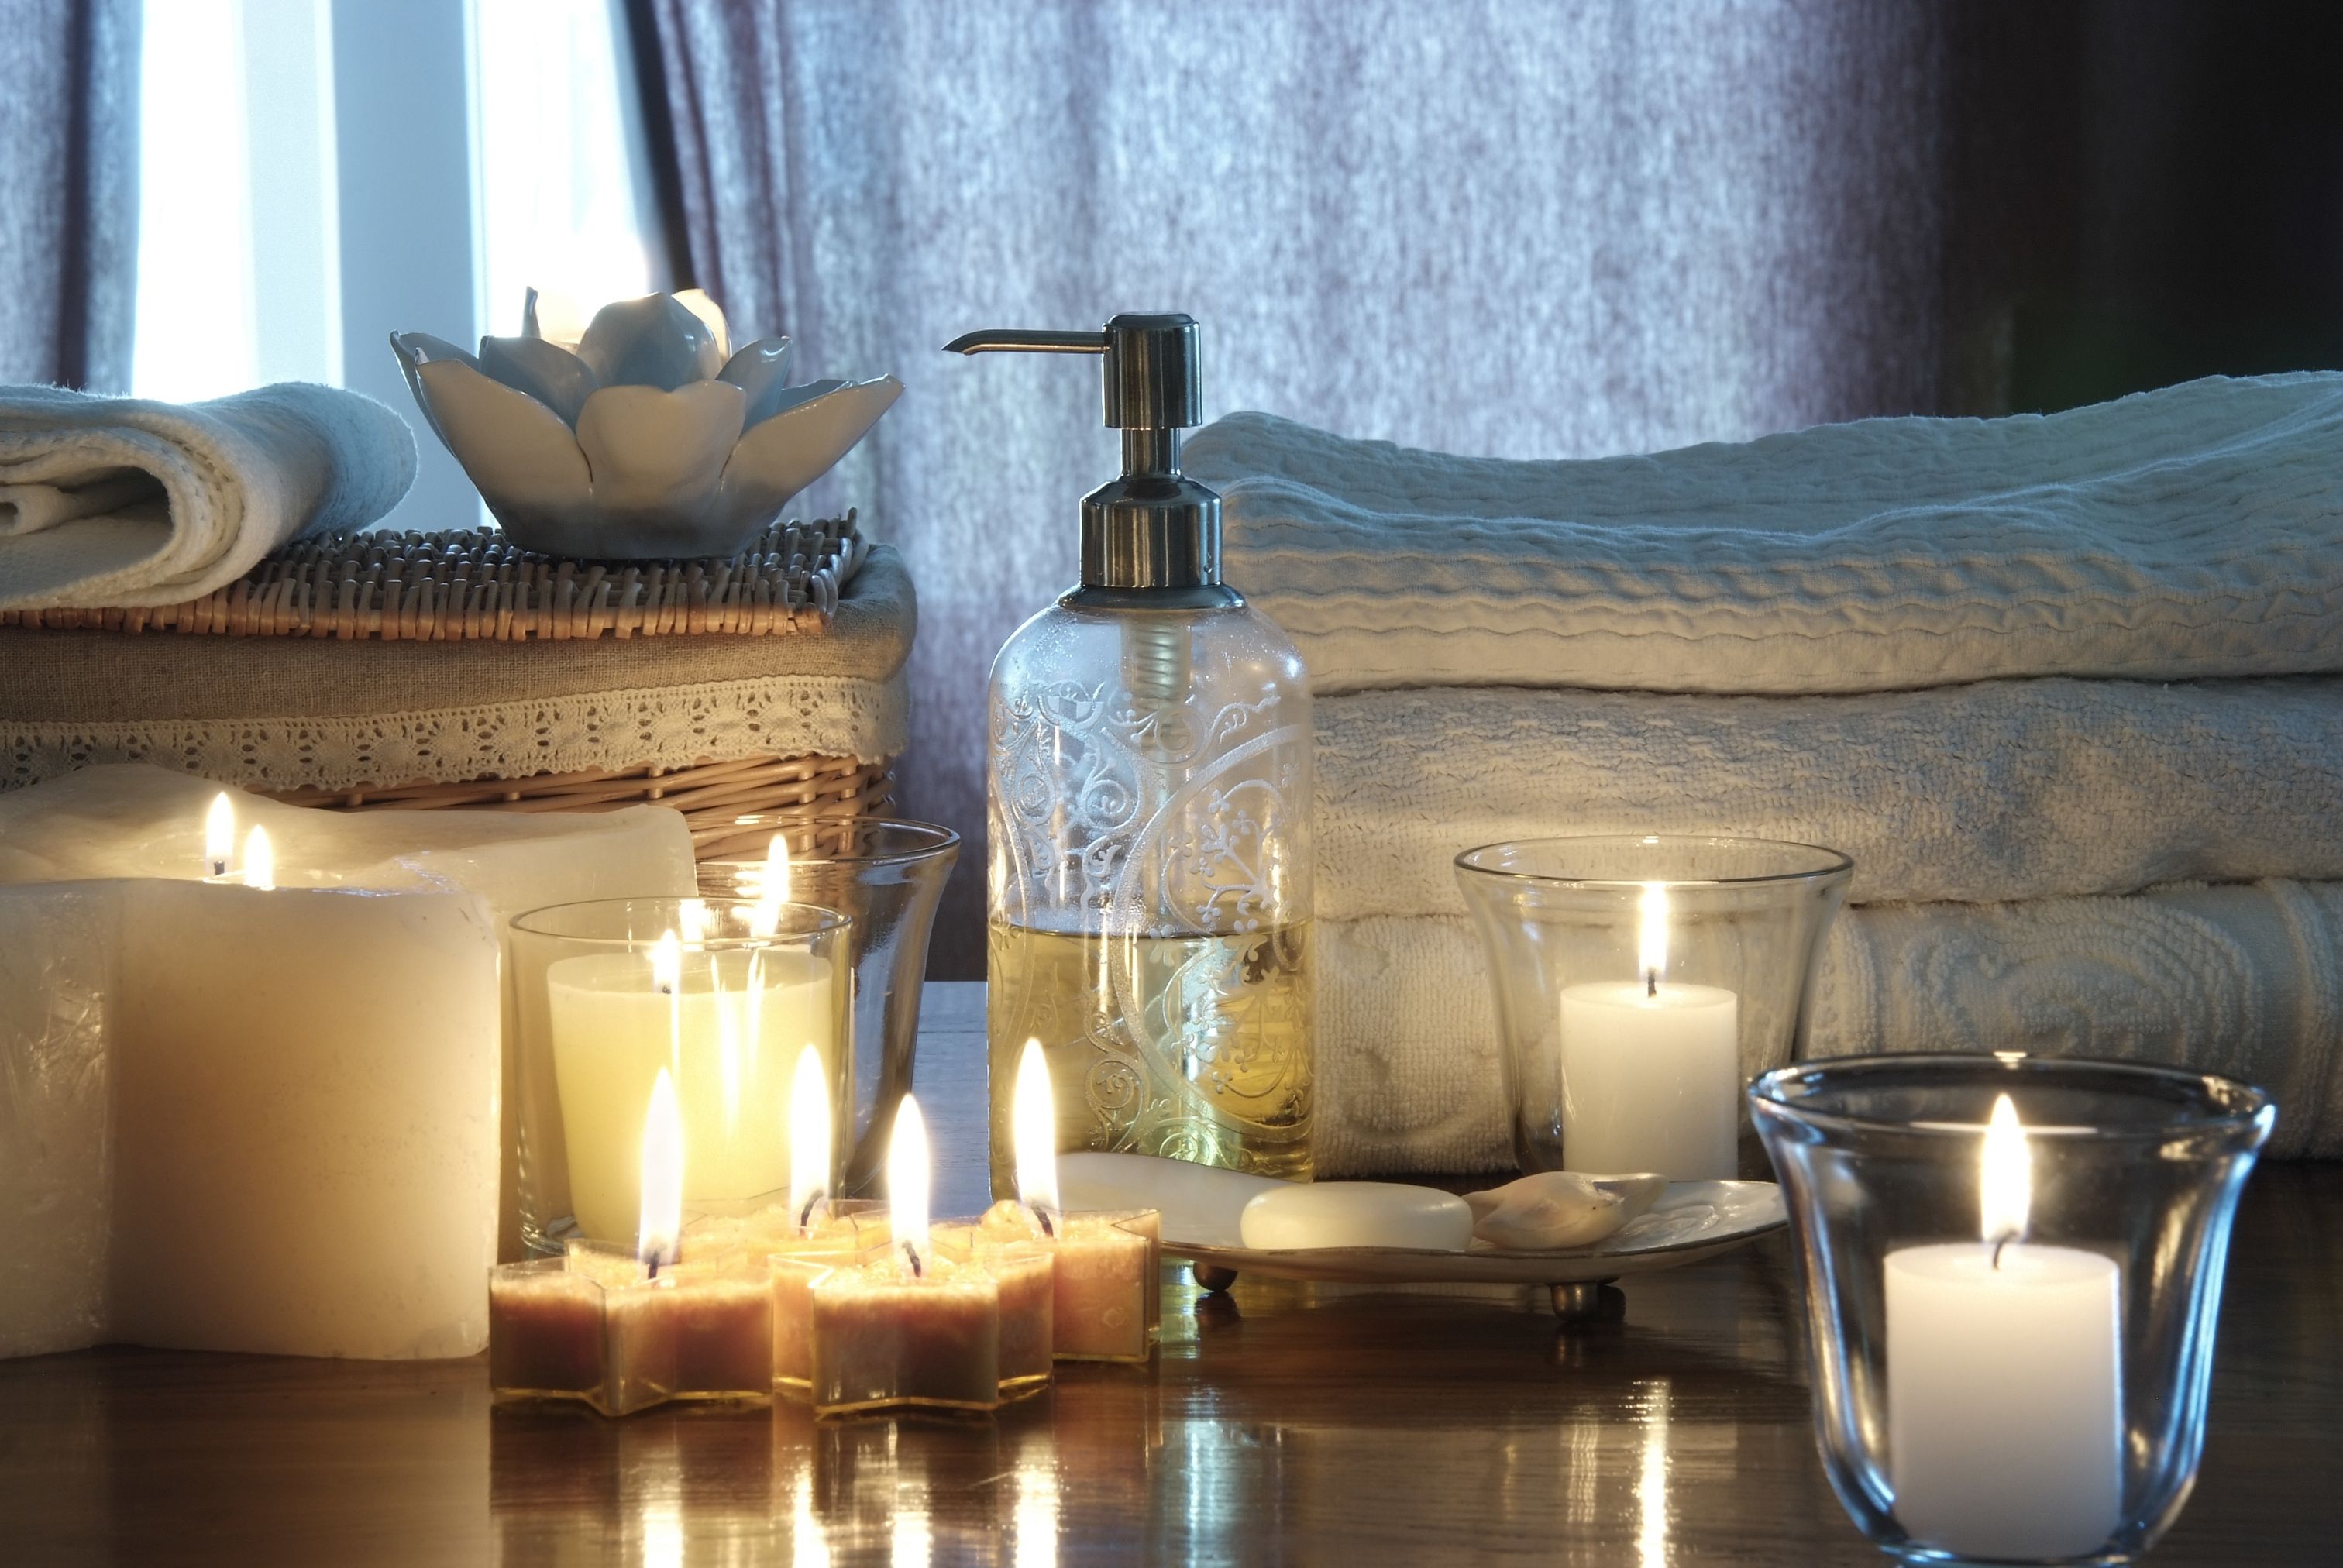 Enciendes velas aromáticas en casa? Una experta revela qué riesgos